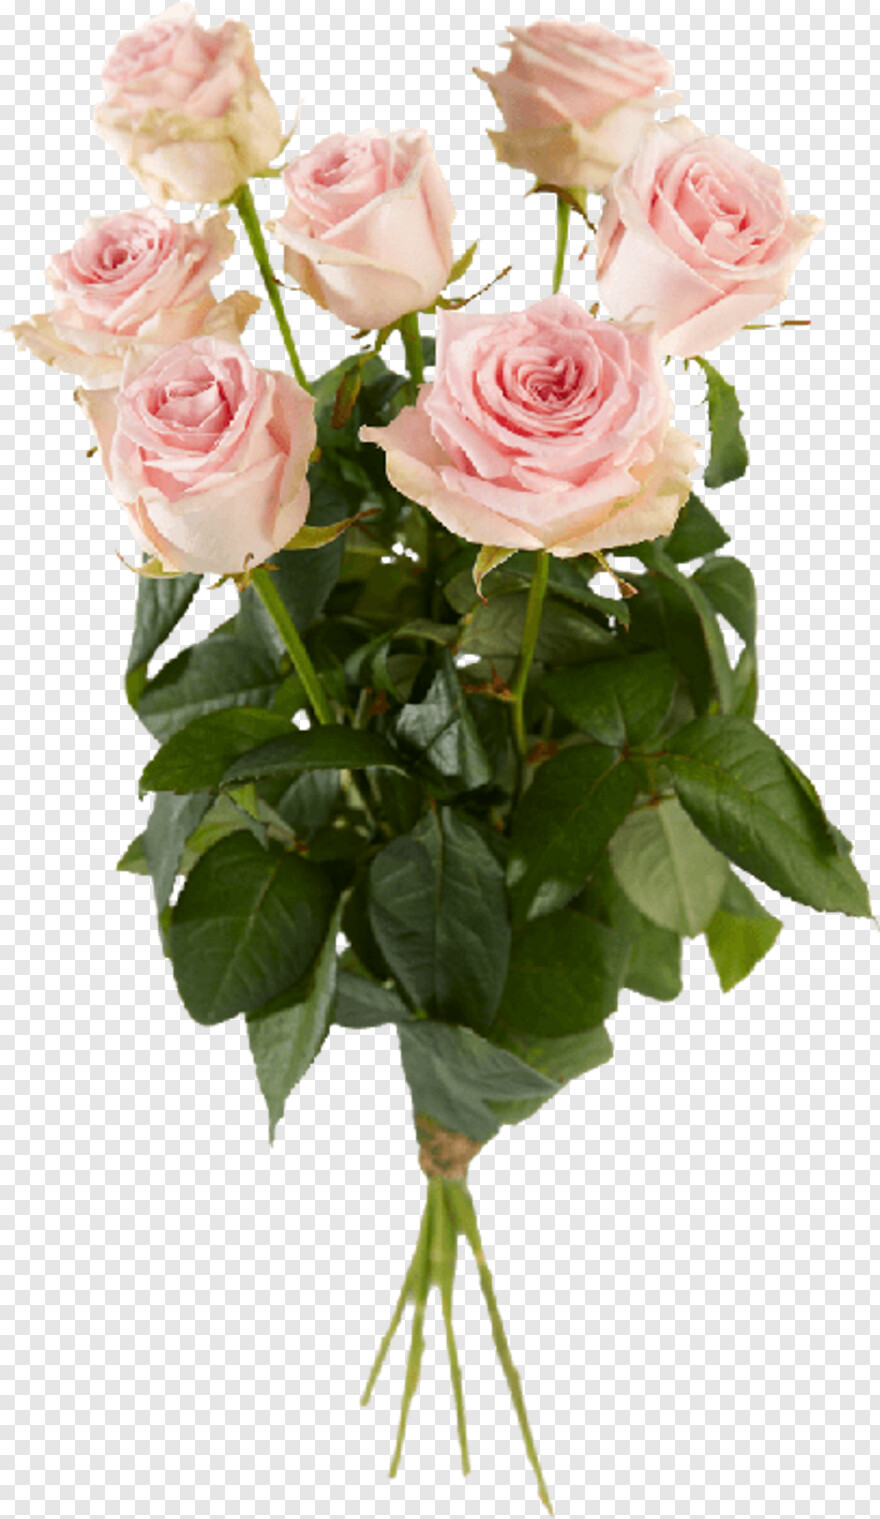  Single Rose, Single Rose Flower, Single Flower, Single Sofa, Single Door Fridge, Bouquet Of Roses